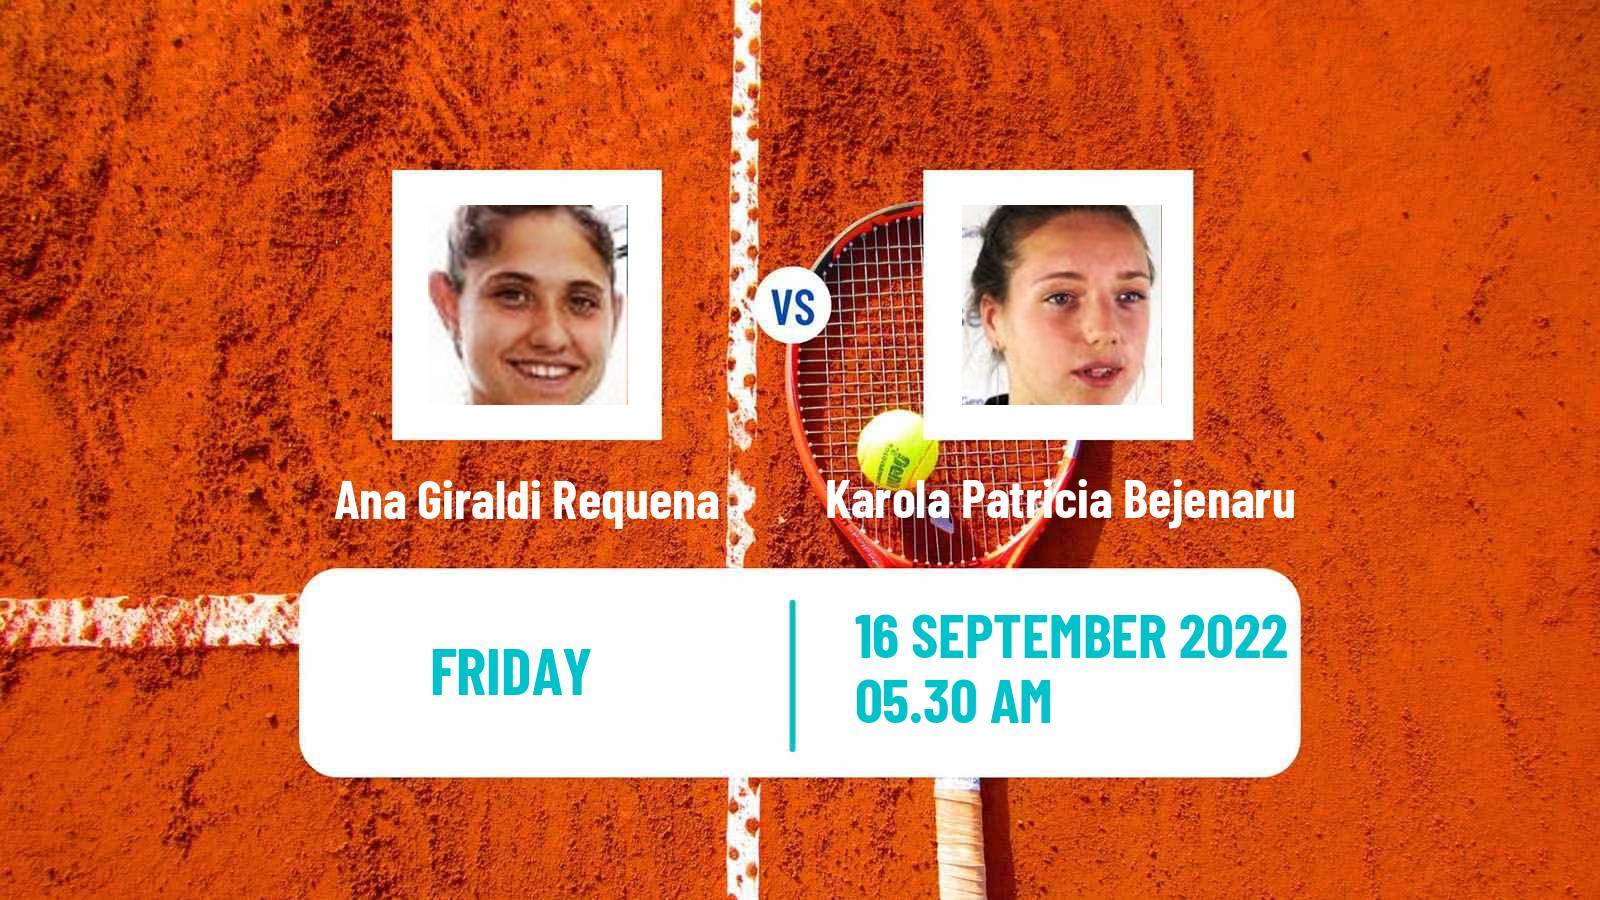 Tennis ITF Tournaments Ana Giraldi Requena - Karola Patricia Bejenaru